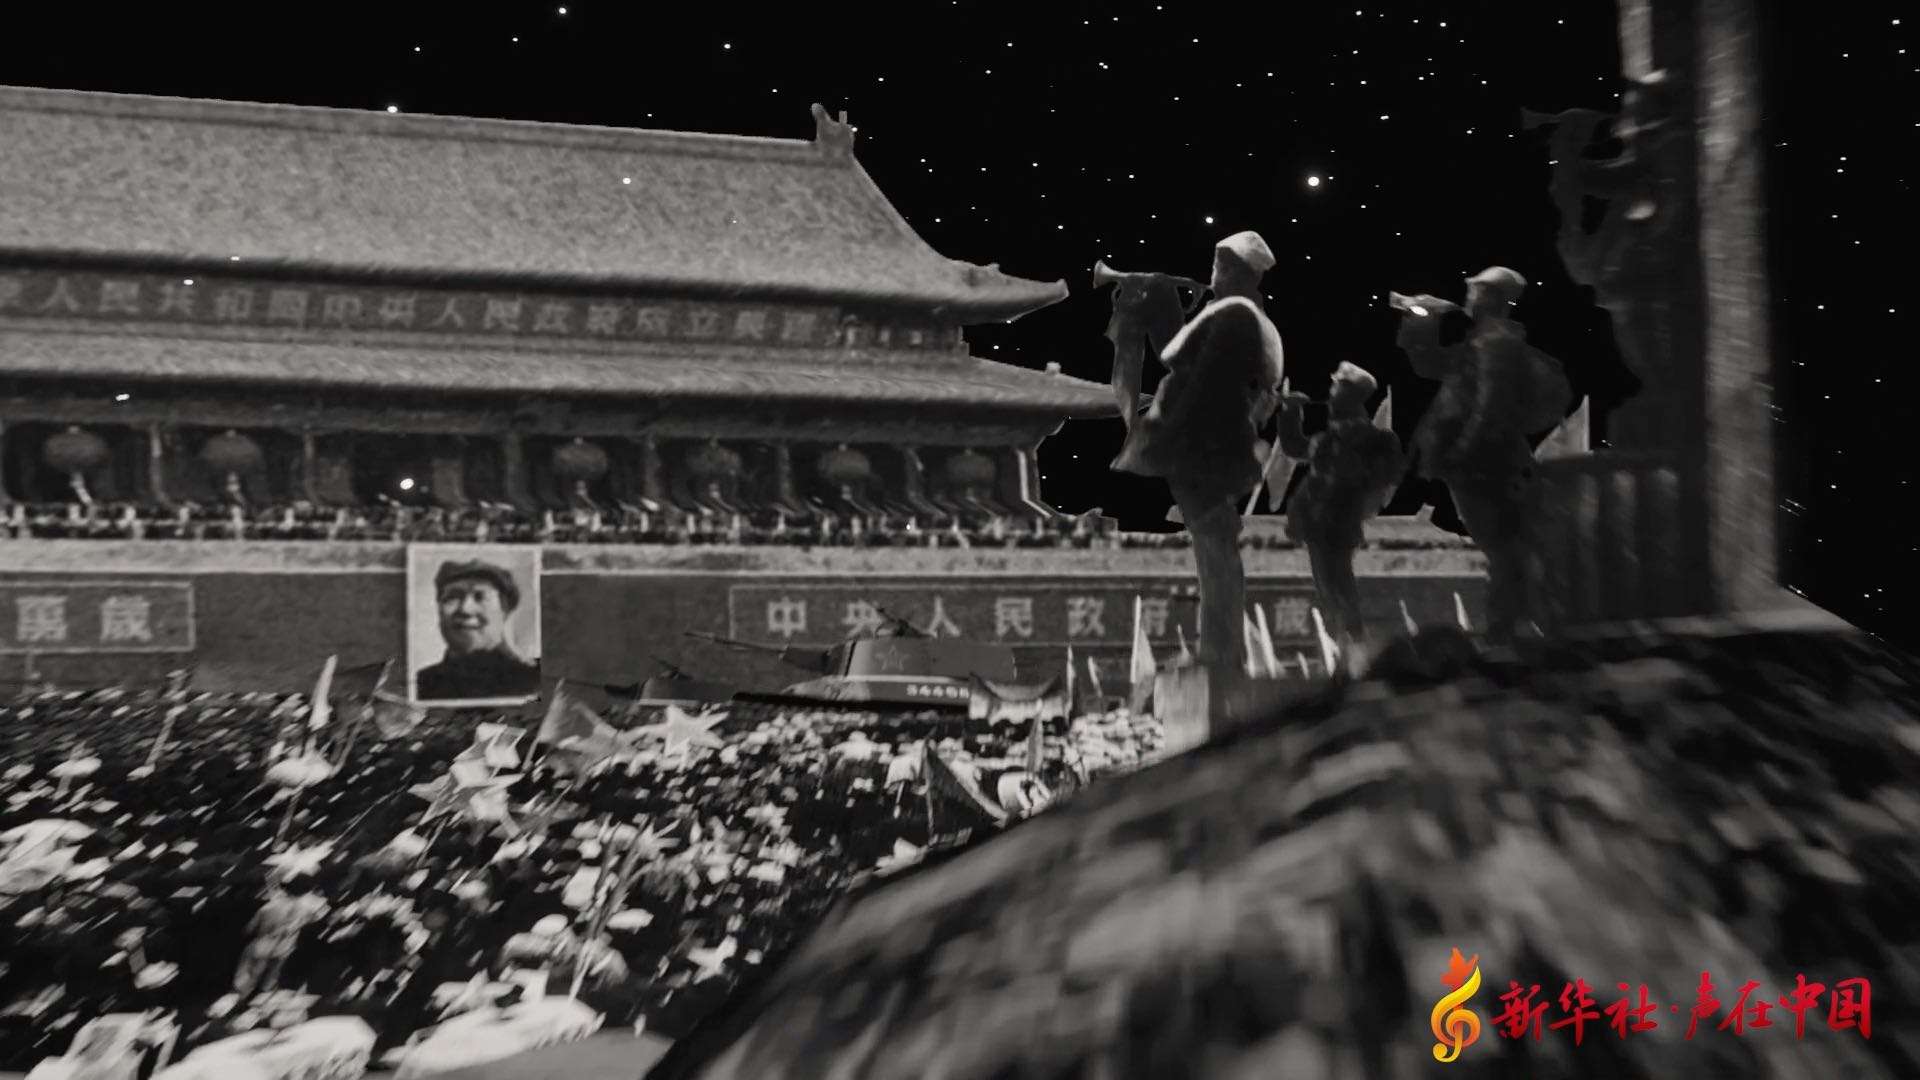 历史的瞬间 ——新华社 声在中国